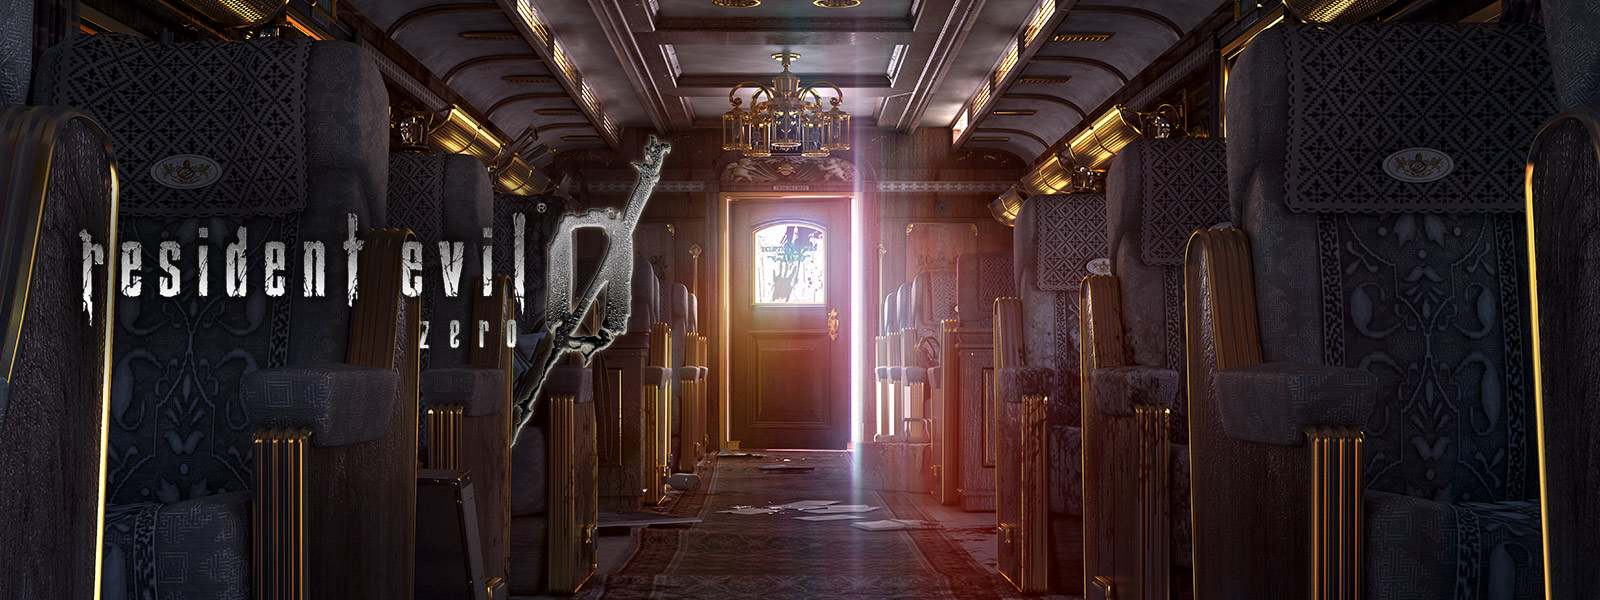 Resident Evil 0, captura de pantalla del interior de un tren lujoso